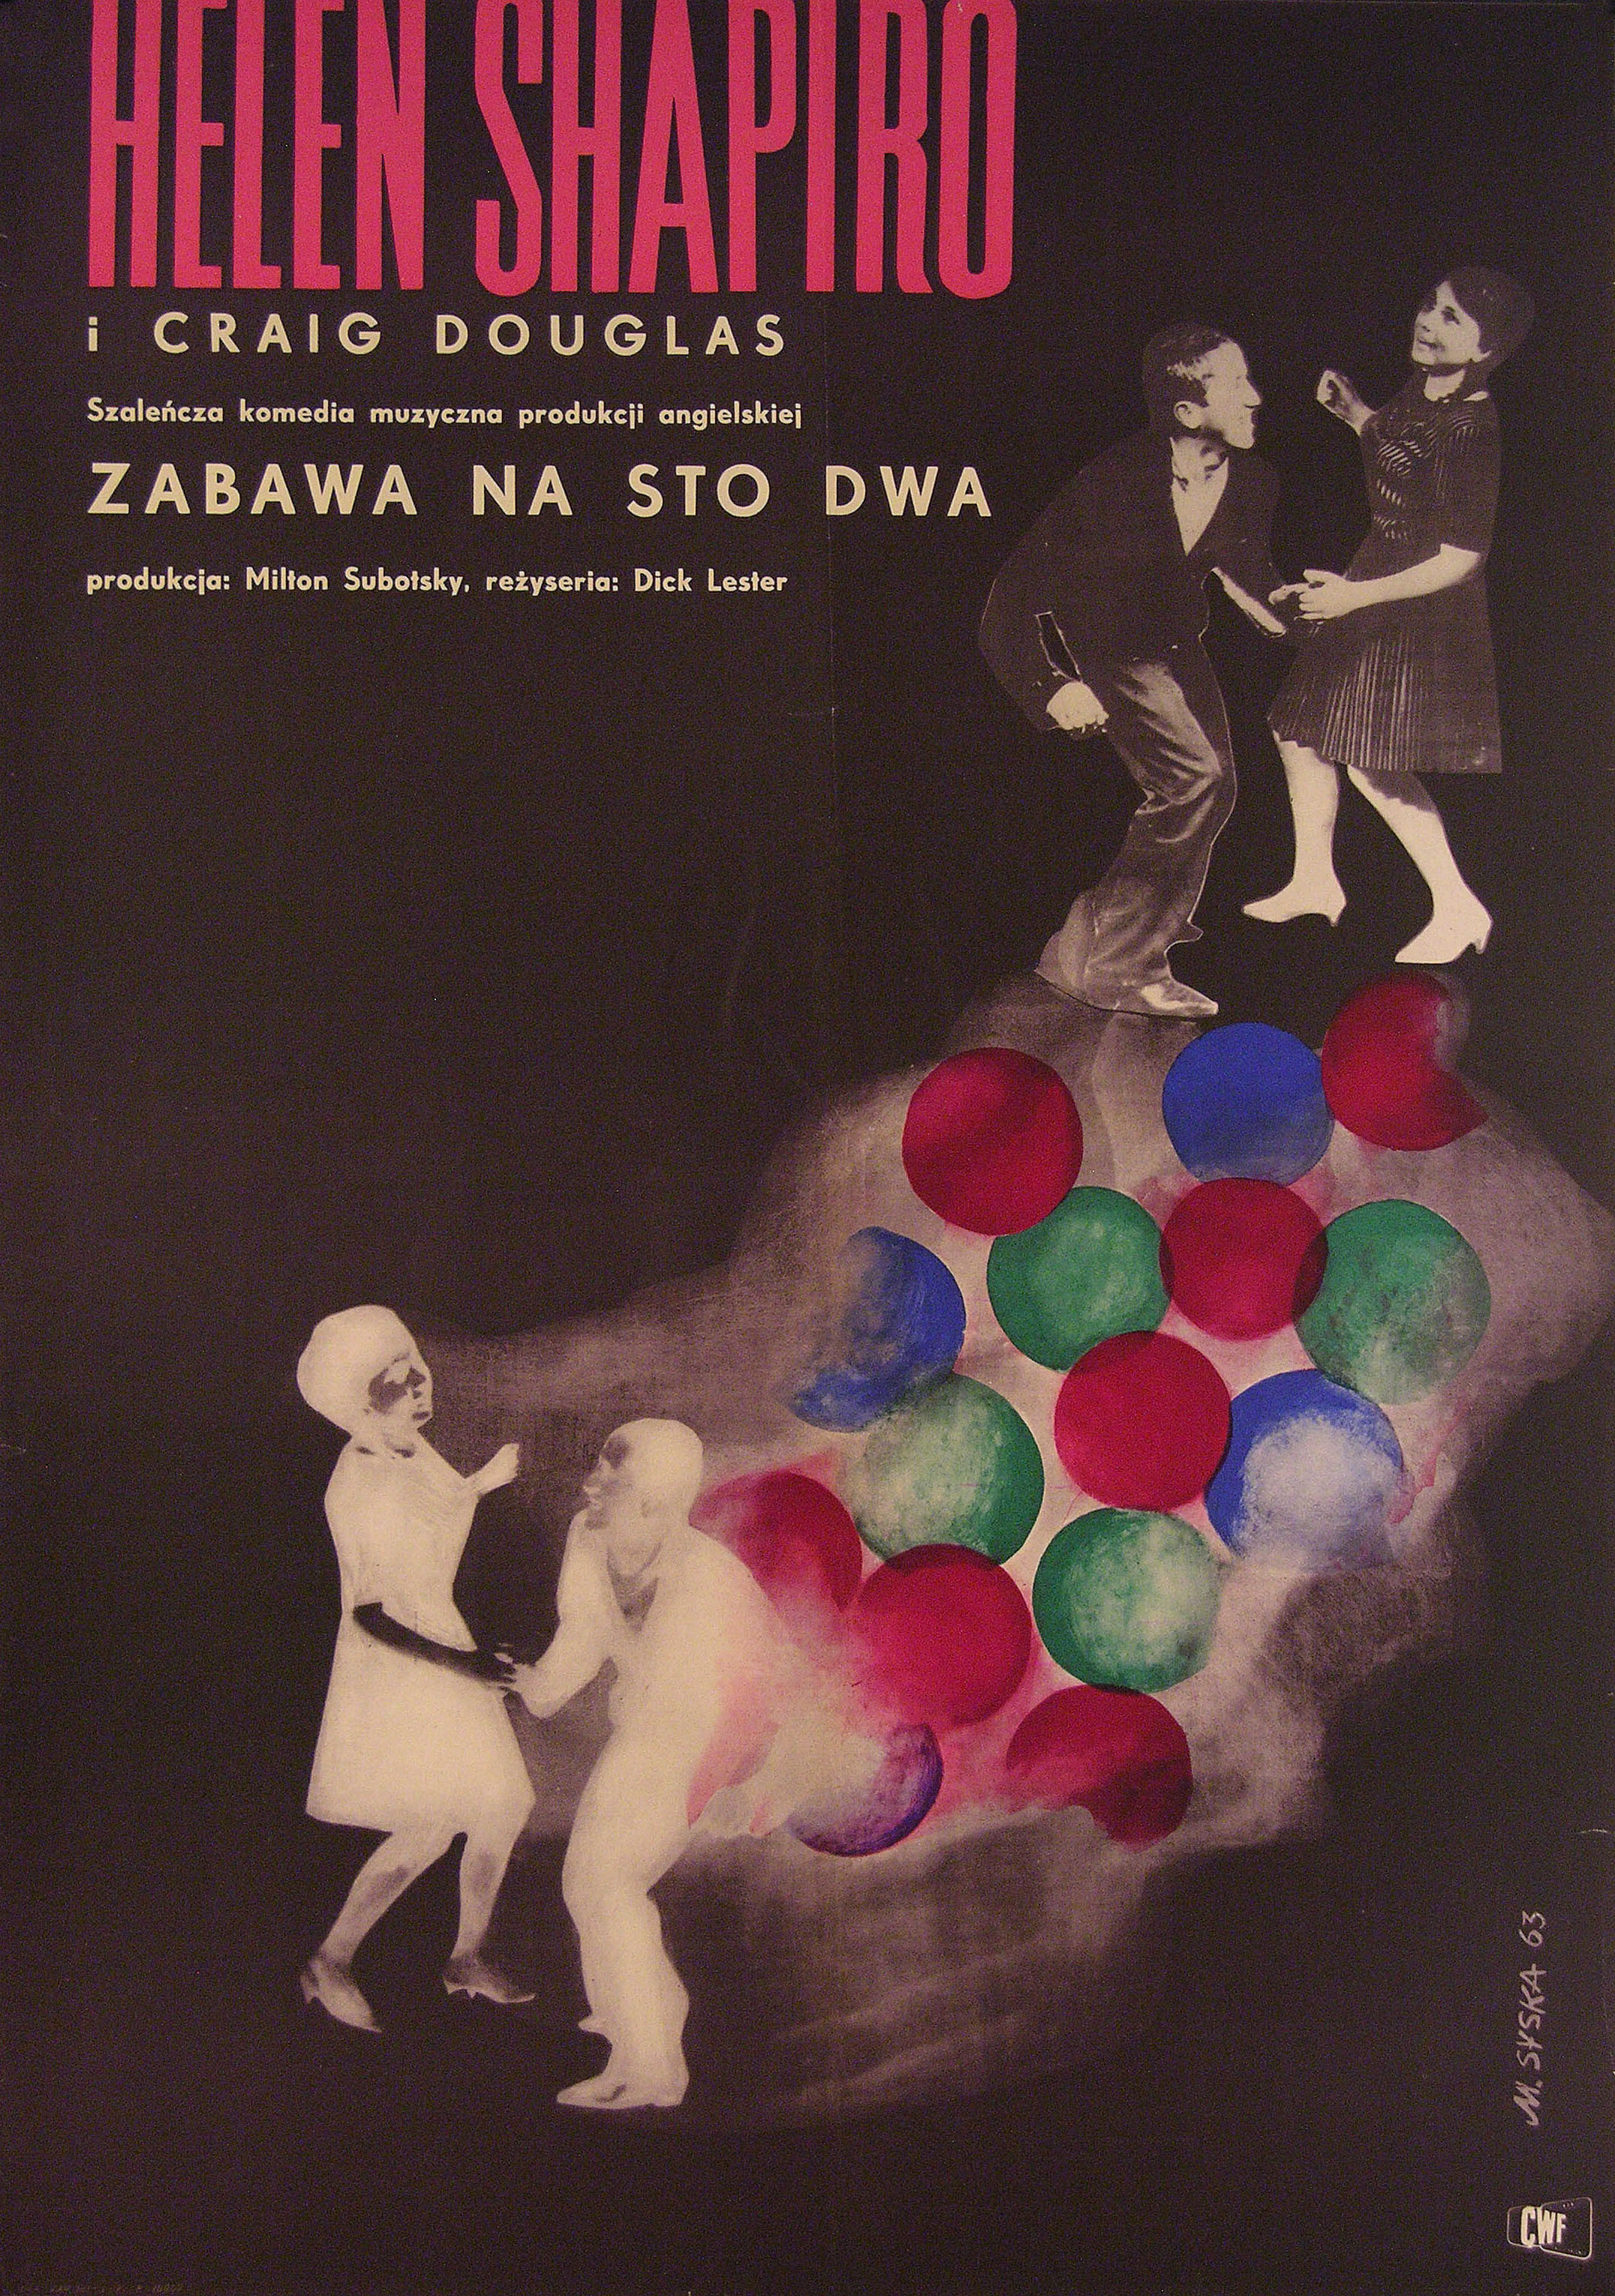 Это старомодно, папа (Ring-a-Ding Rhythm!, 1962), режиссёр Ричард Лестер, польский постер к фильму (графический дизайн, 1963 год)